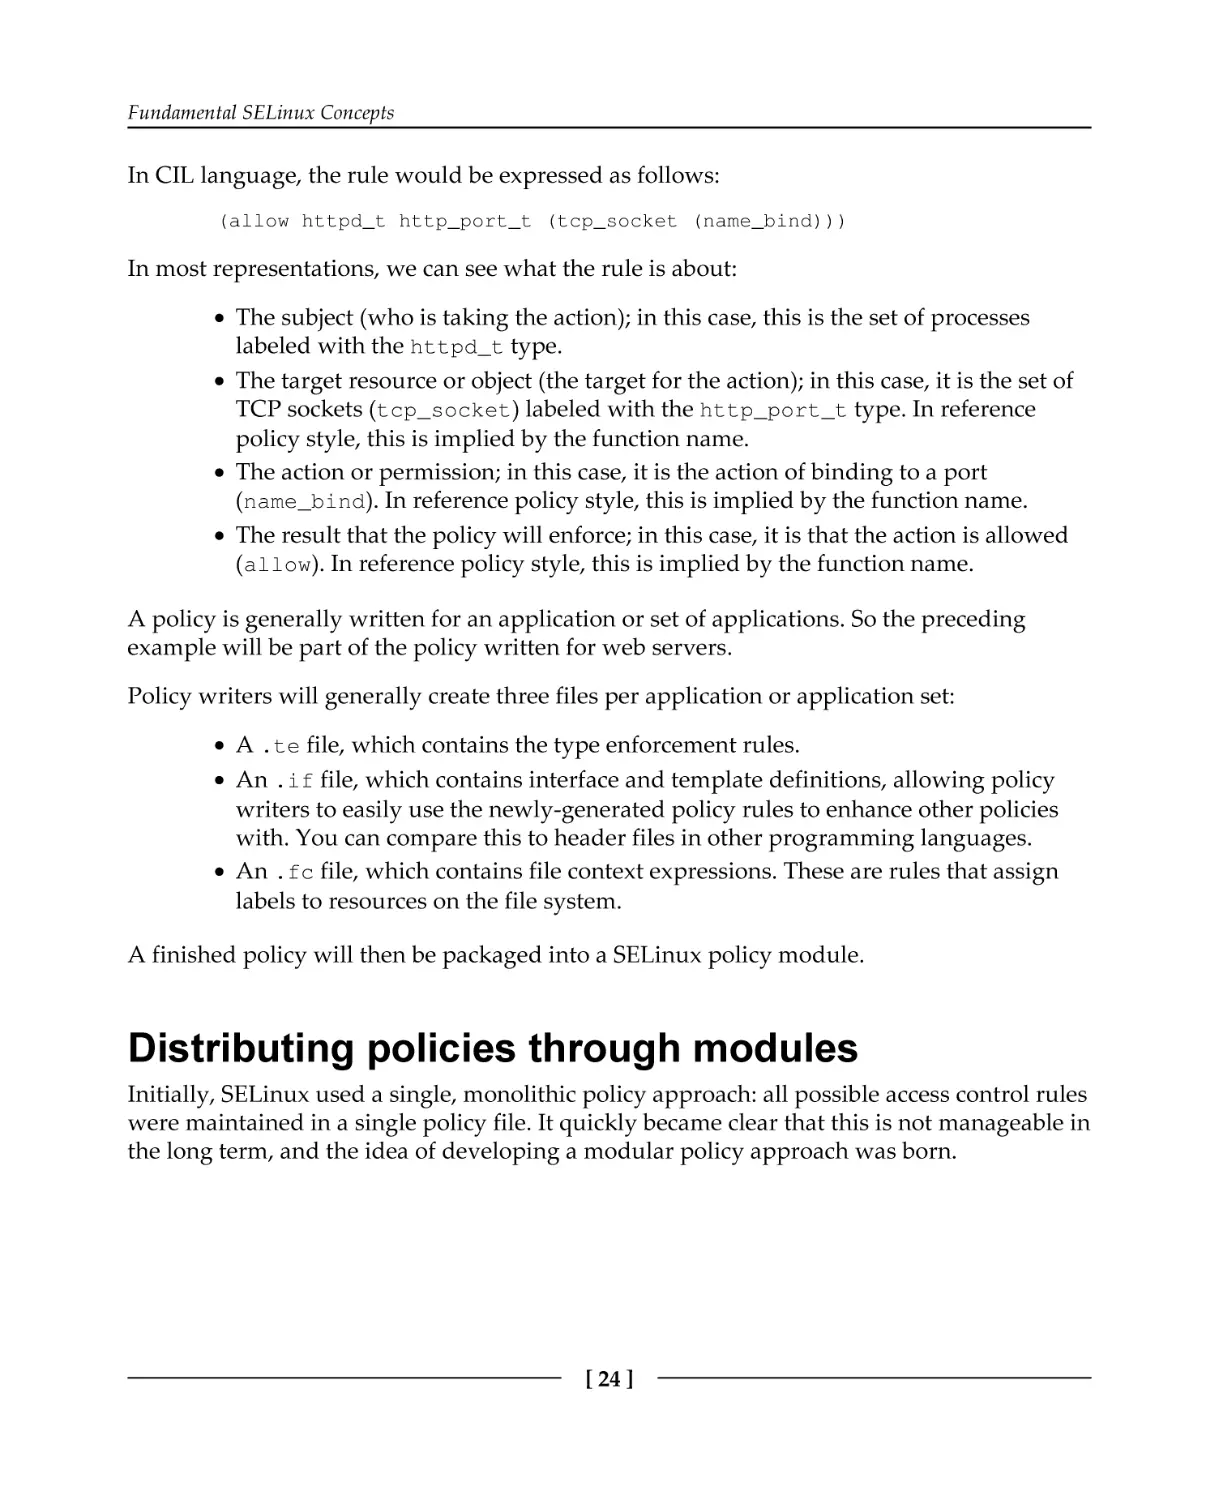 Distributing policies through modules